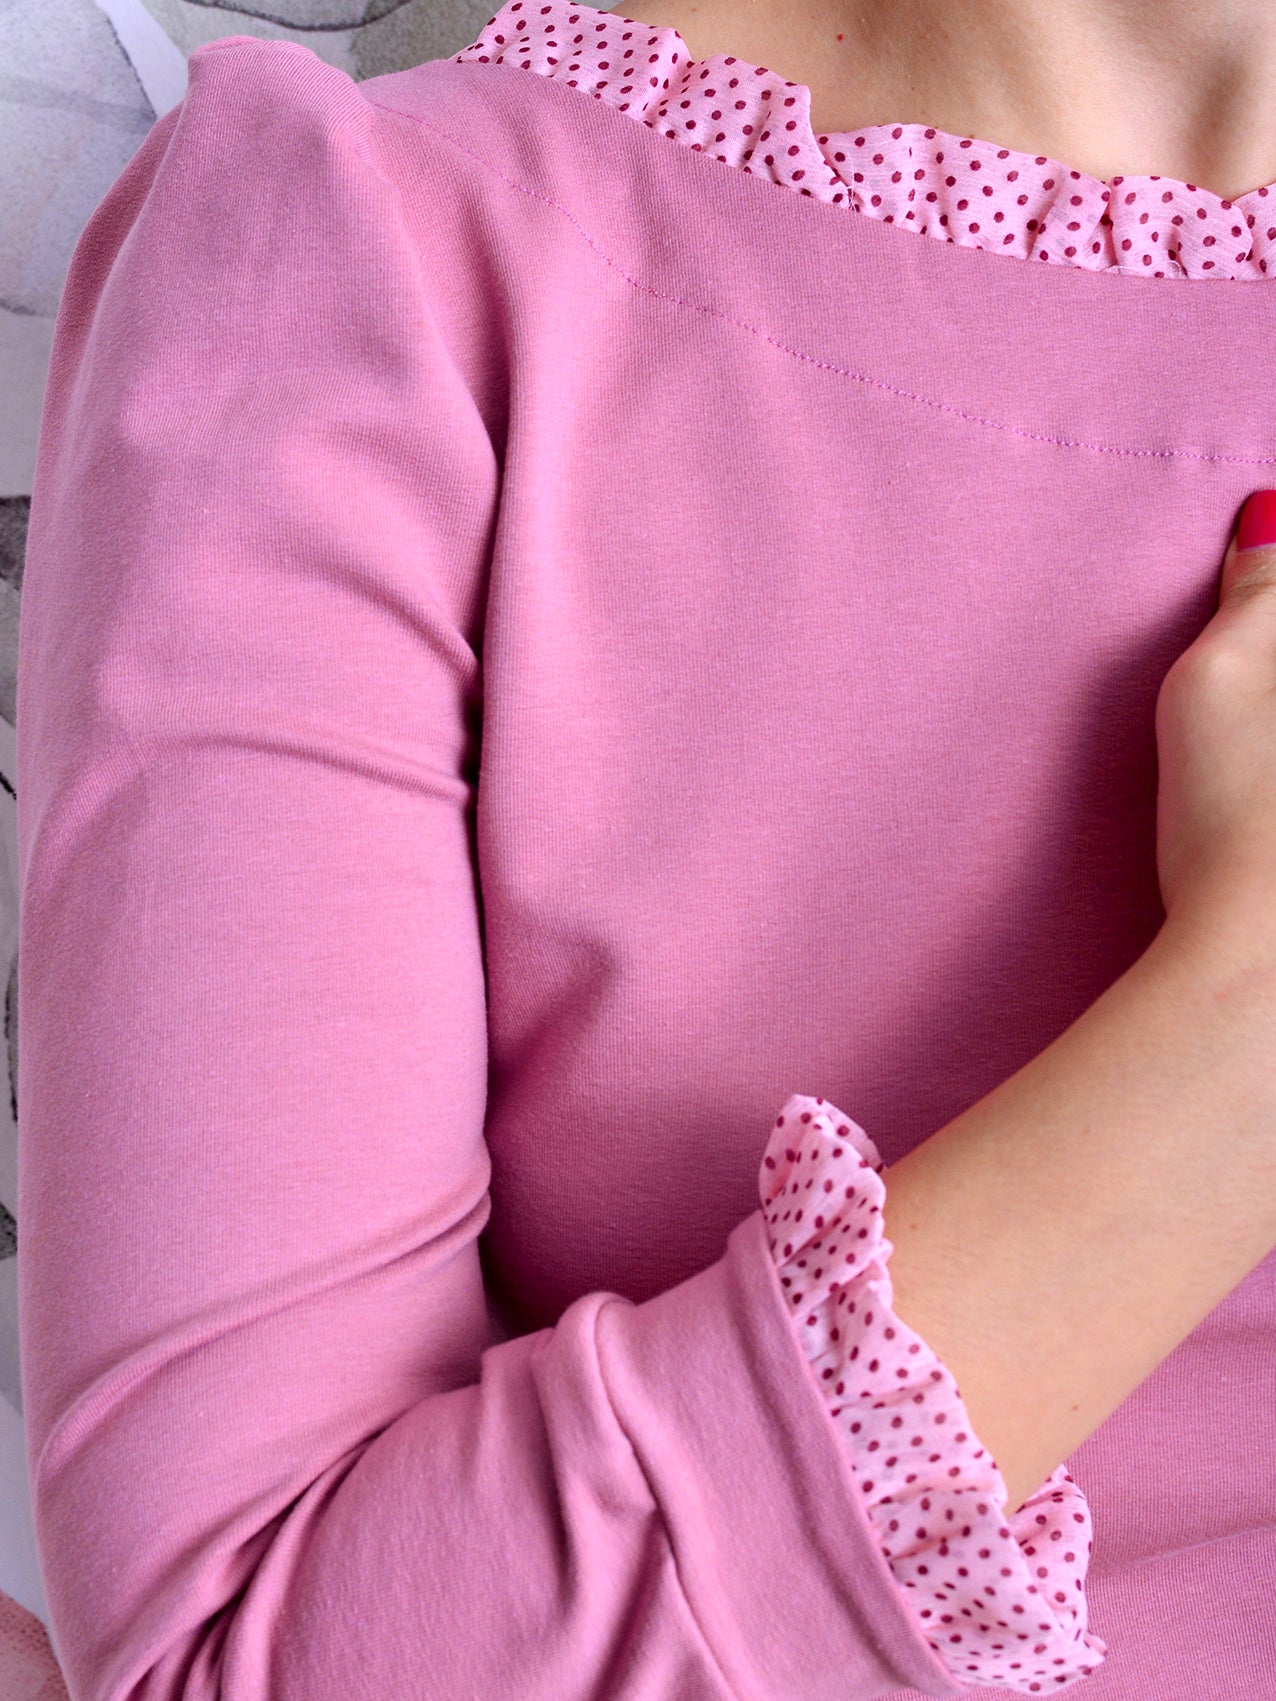 Sweatshirt LEA altrosa Punkte lachs Rüschen pink Schleife von STADTKIND POTSDAM